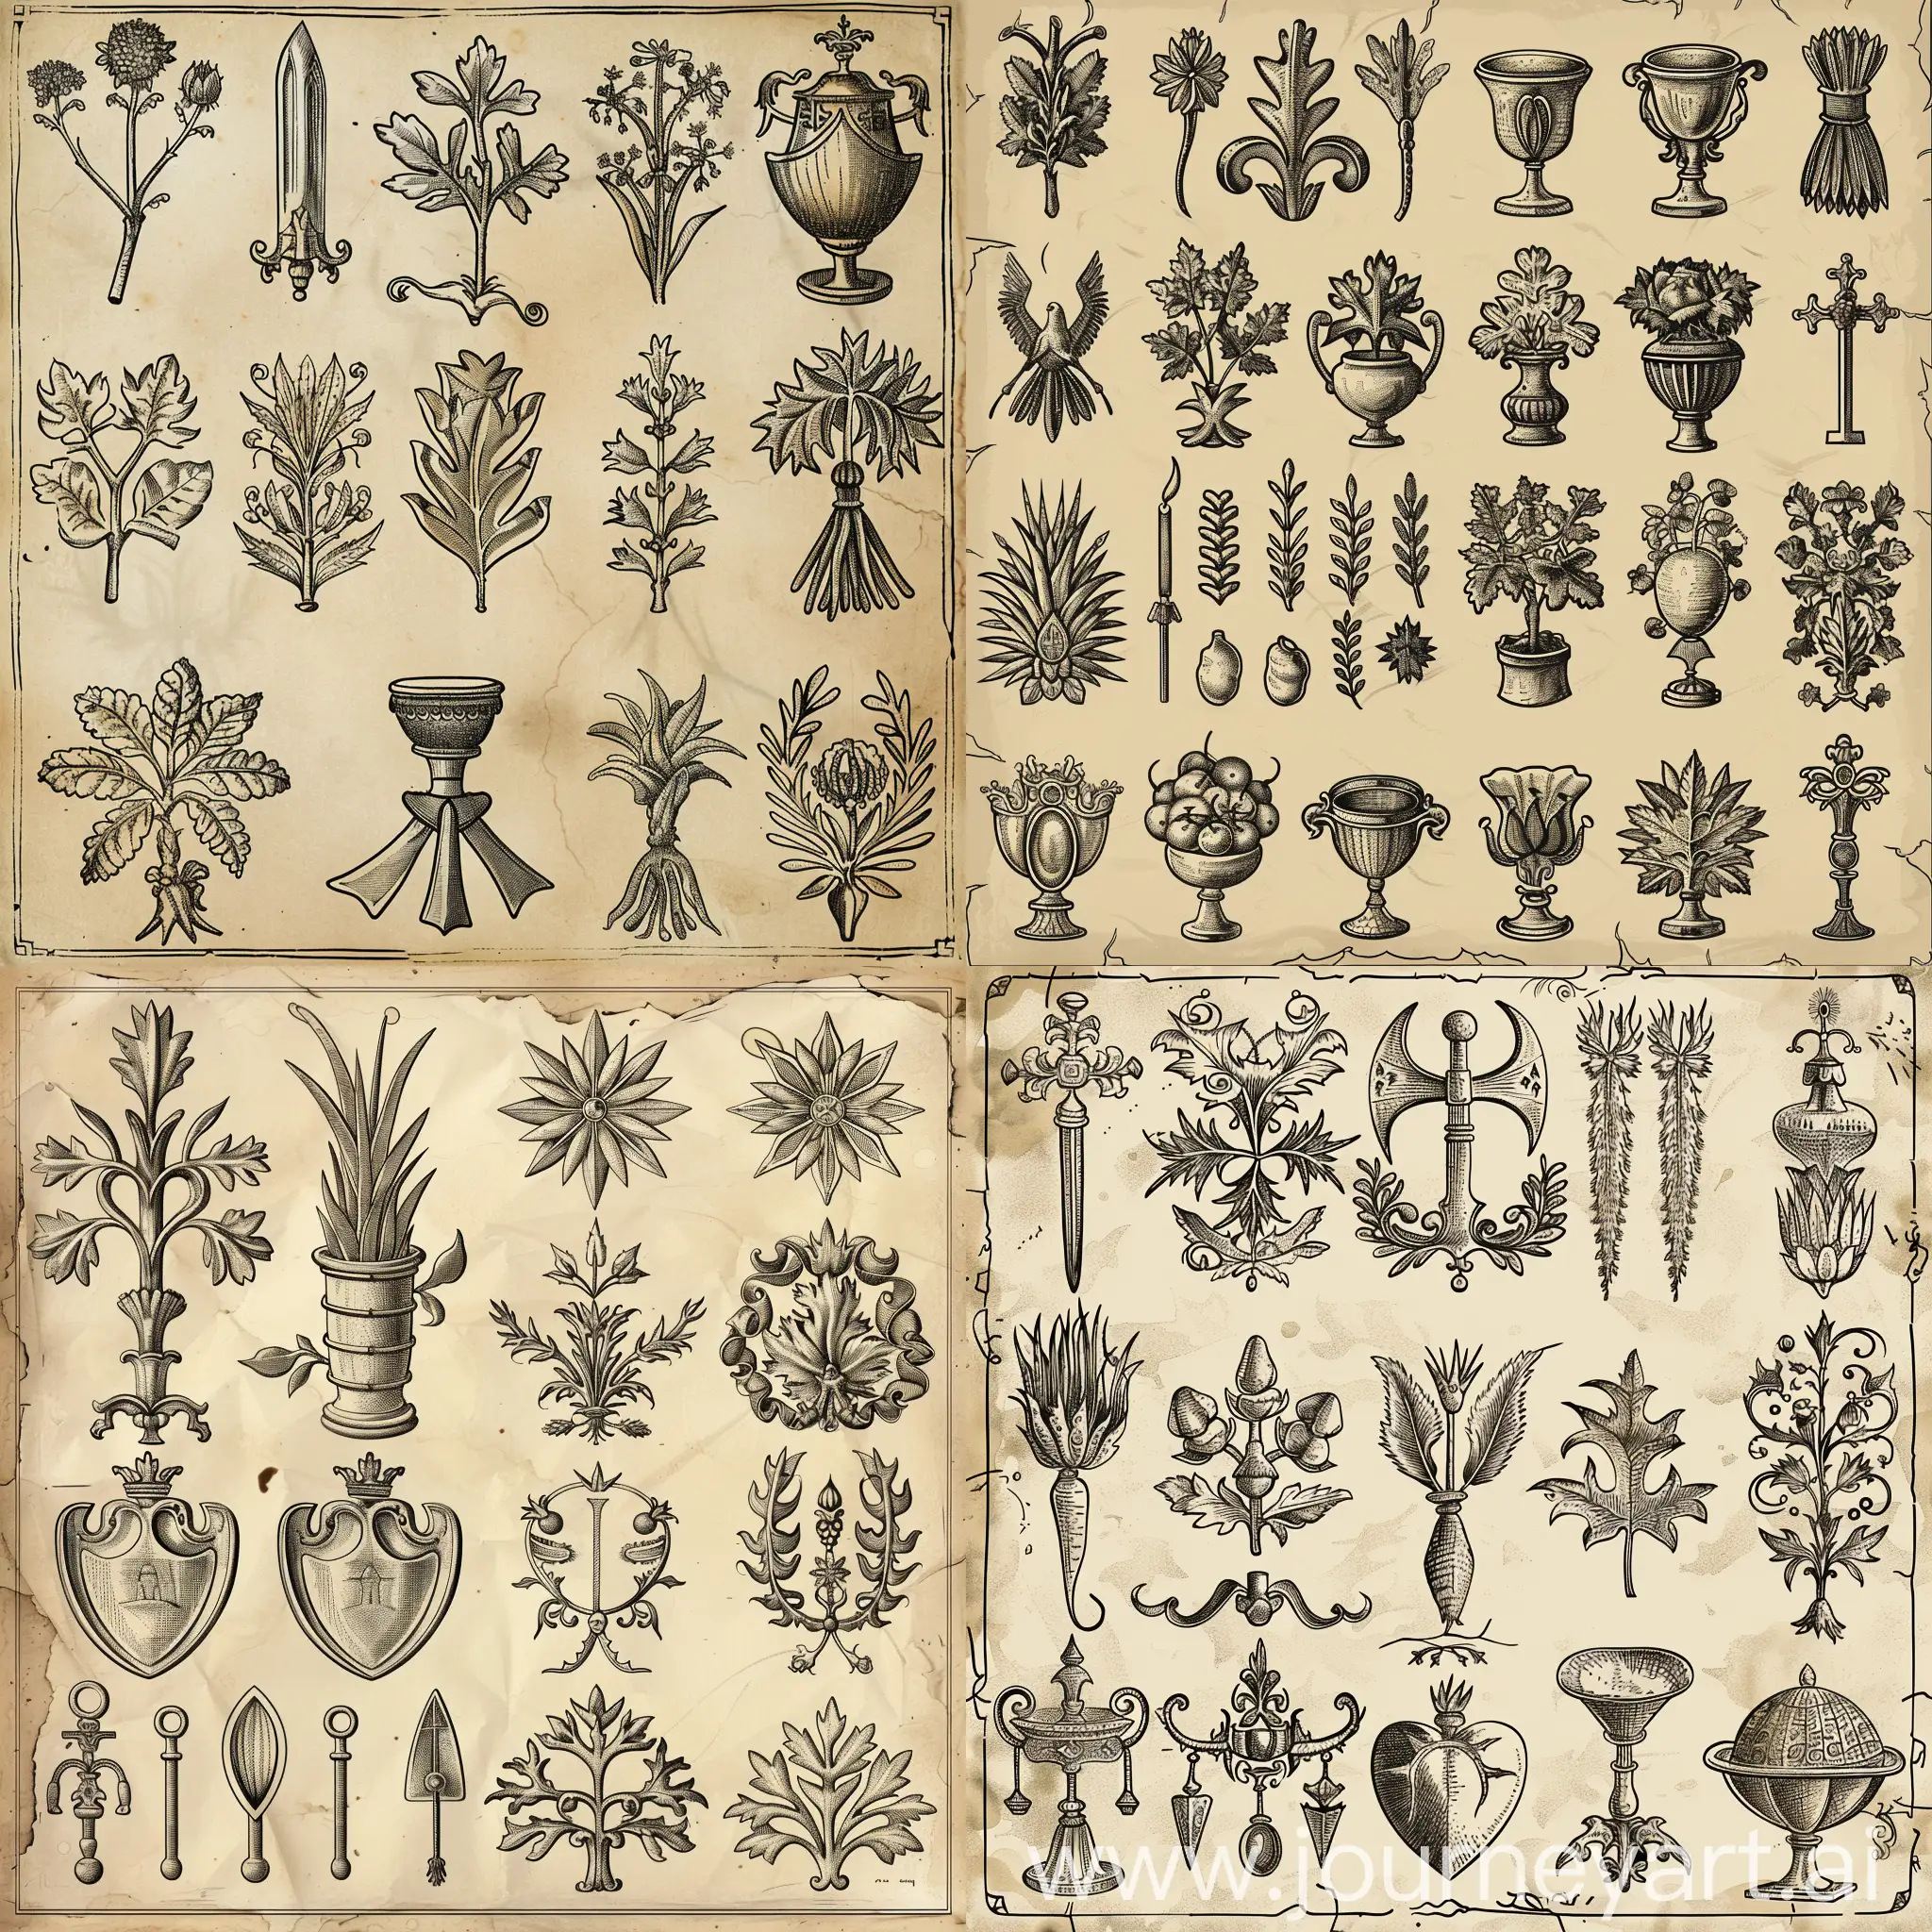 Medieval-Vegetal-Ornamentation-Icons-Set